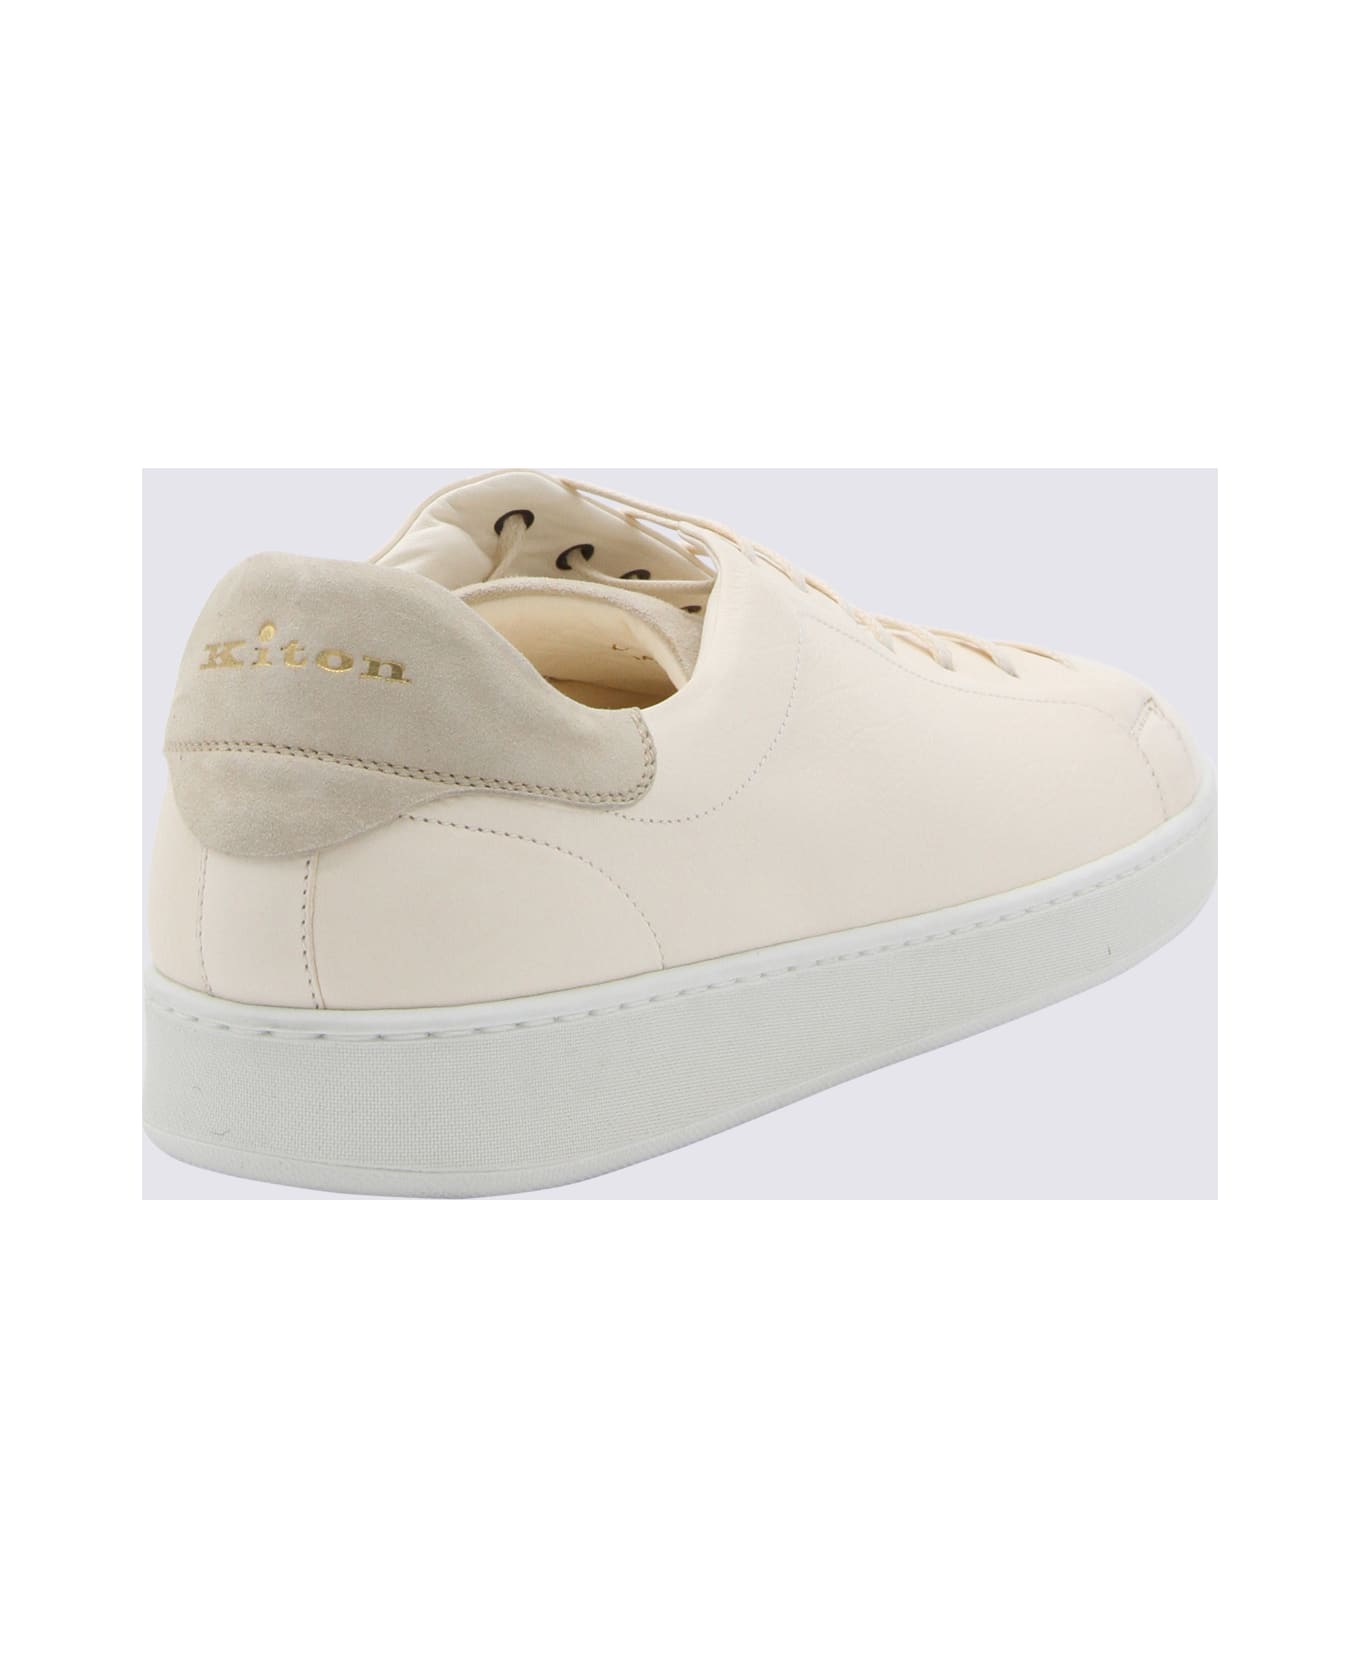 Kiton White Leather Sneakers - White